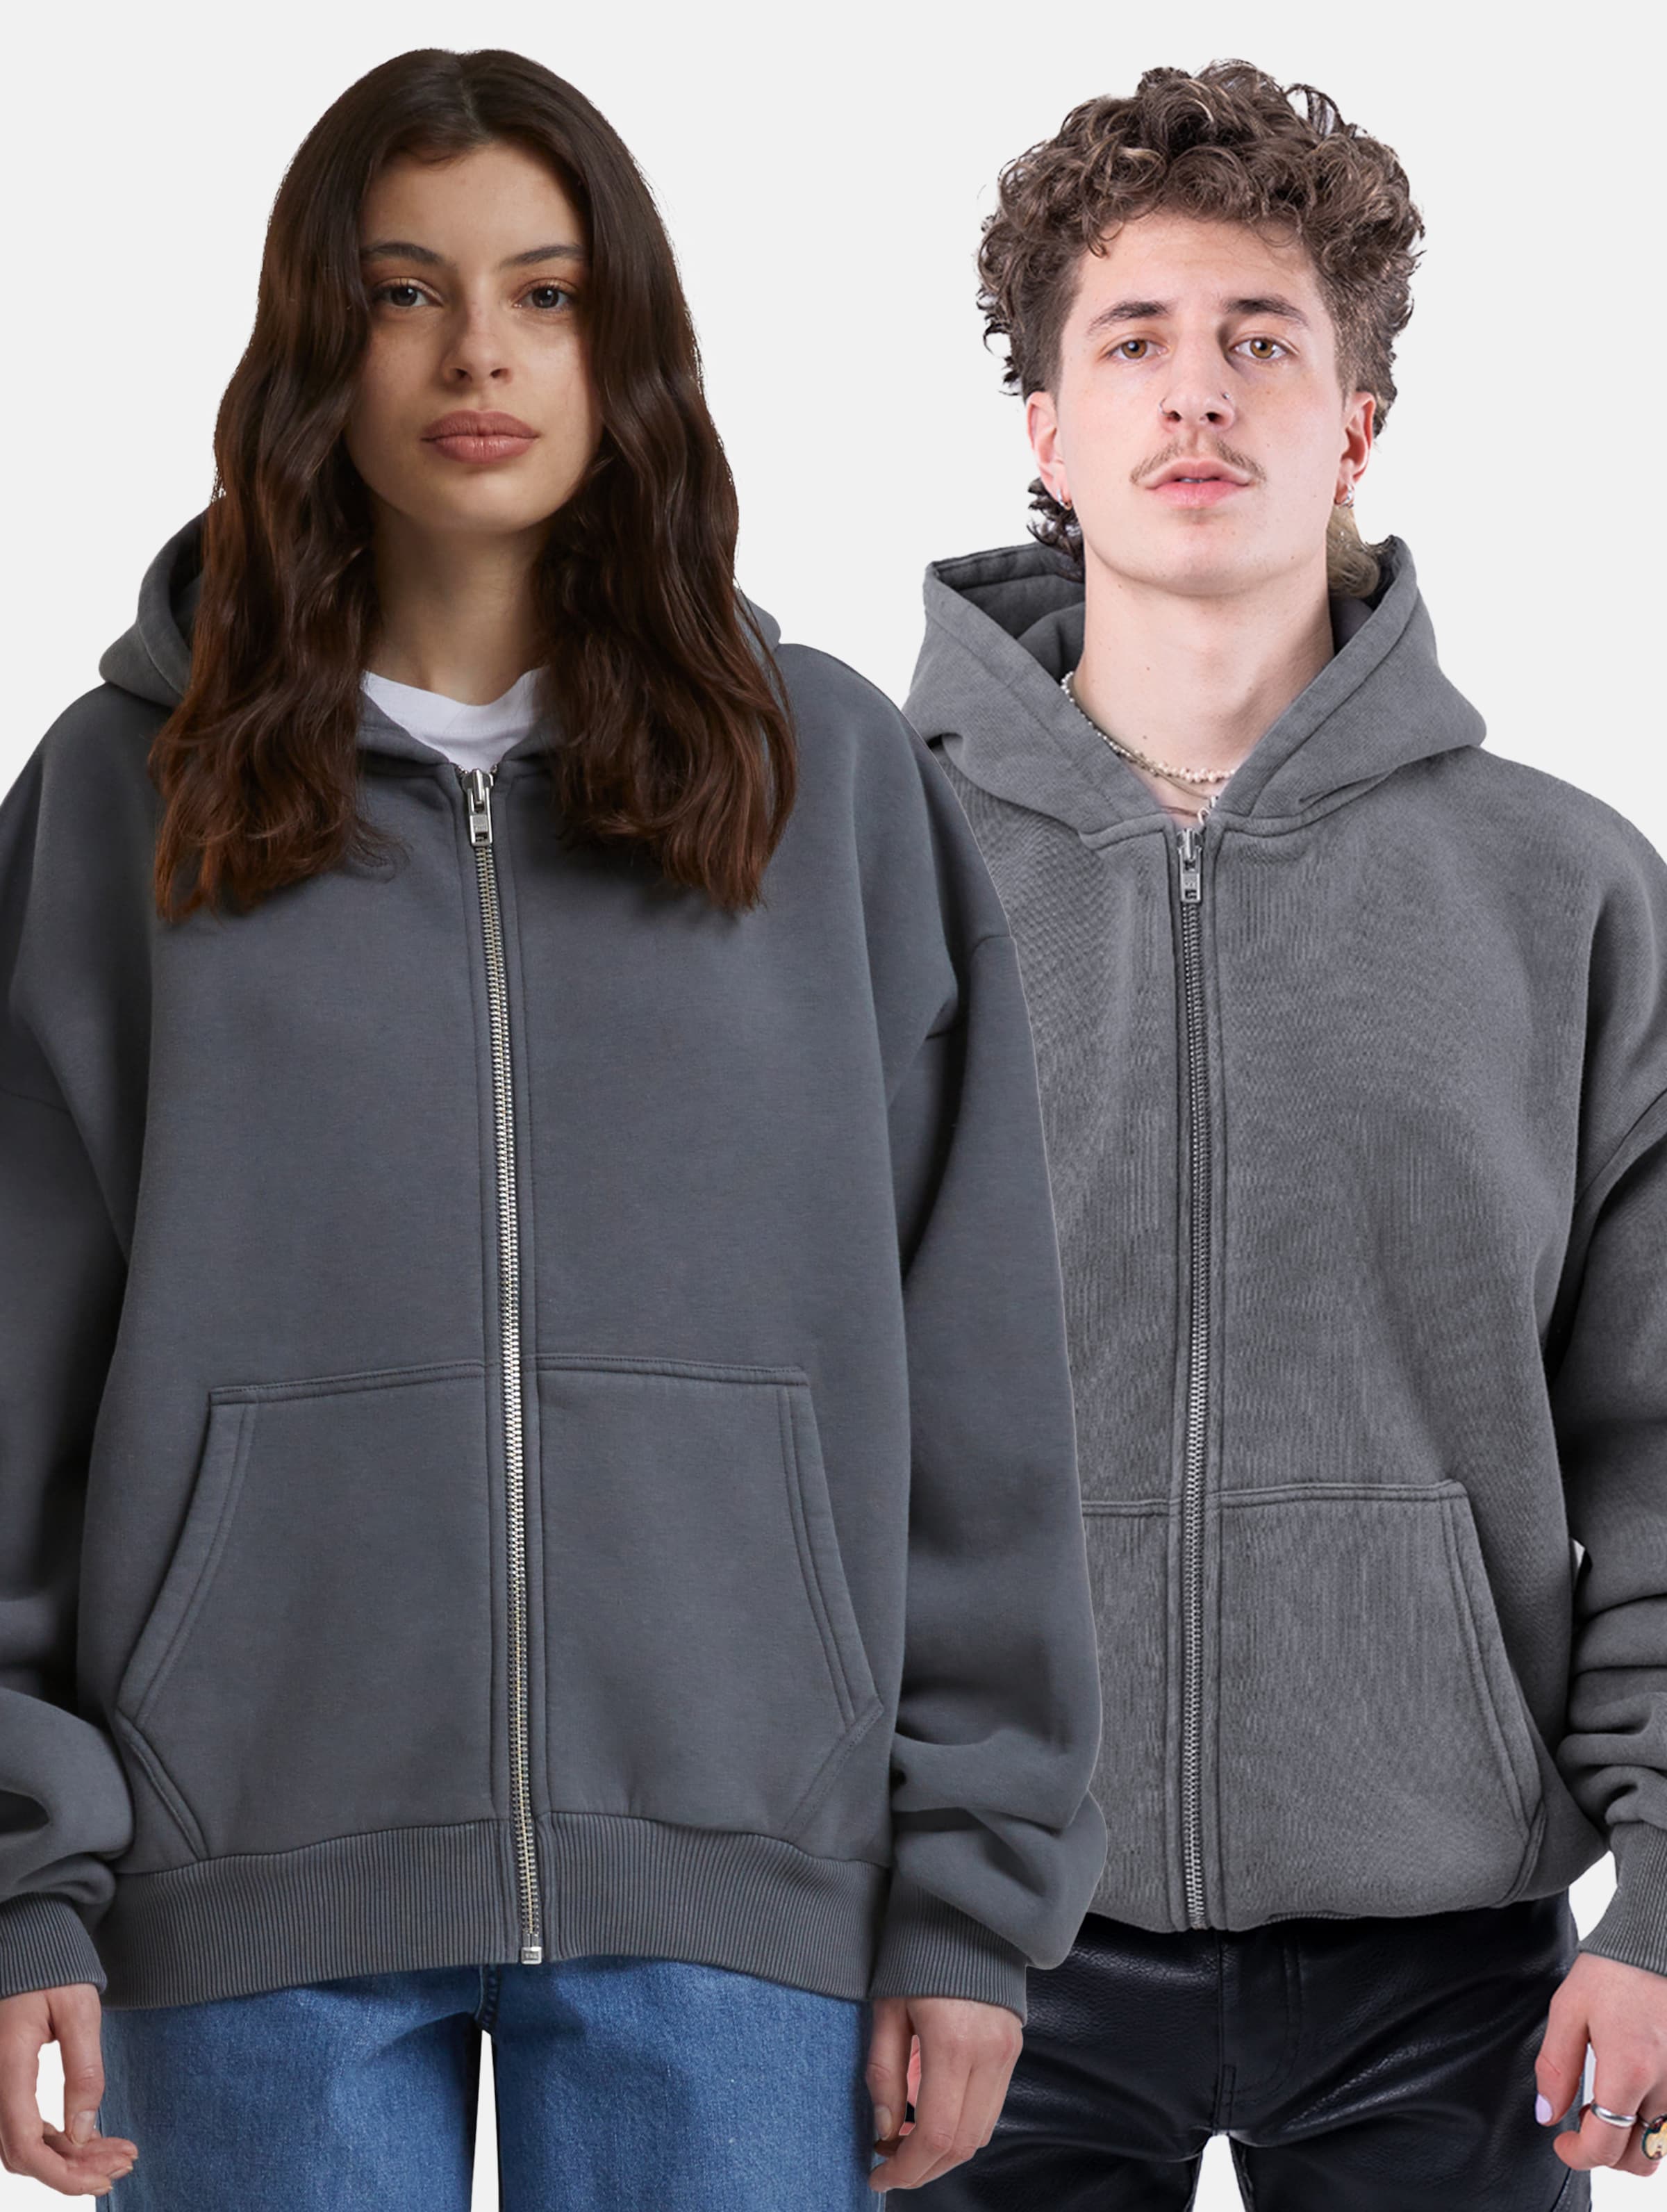 Prohibited Oversized Zip Hoodies Frauen,Männer,Unisex op kleur grijs, Maat XL